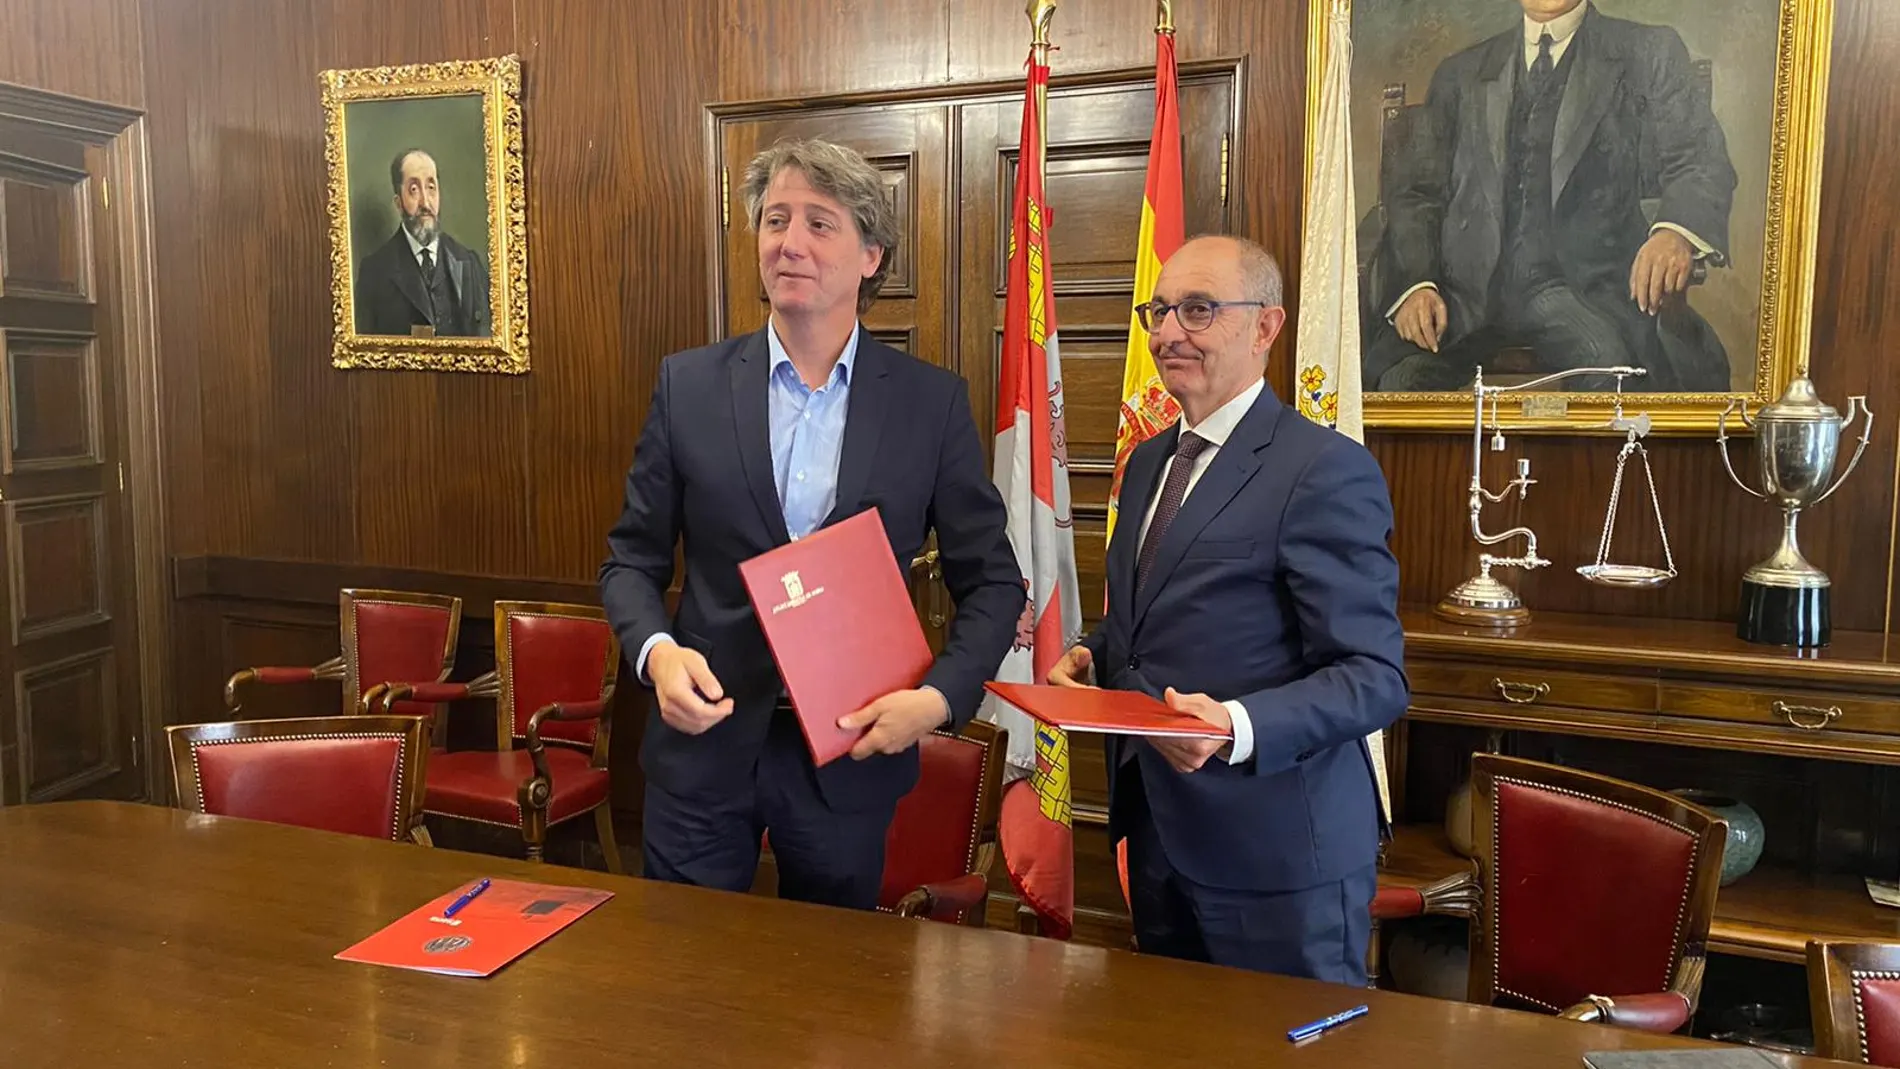 El alcalde de Soria, Carlos Martínez, y el director general de Iberaval, Pedro Pisonero, renuevan el convenio